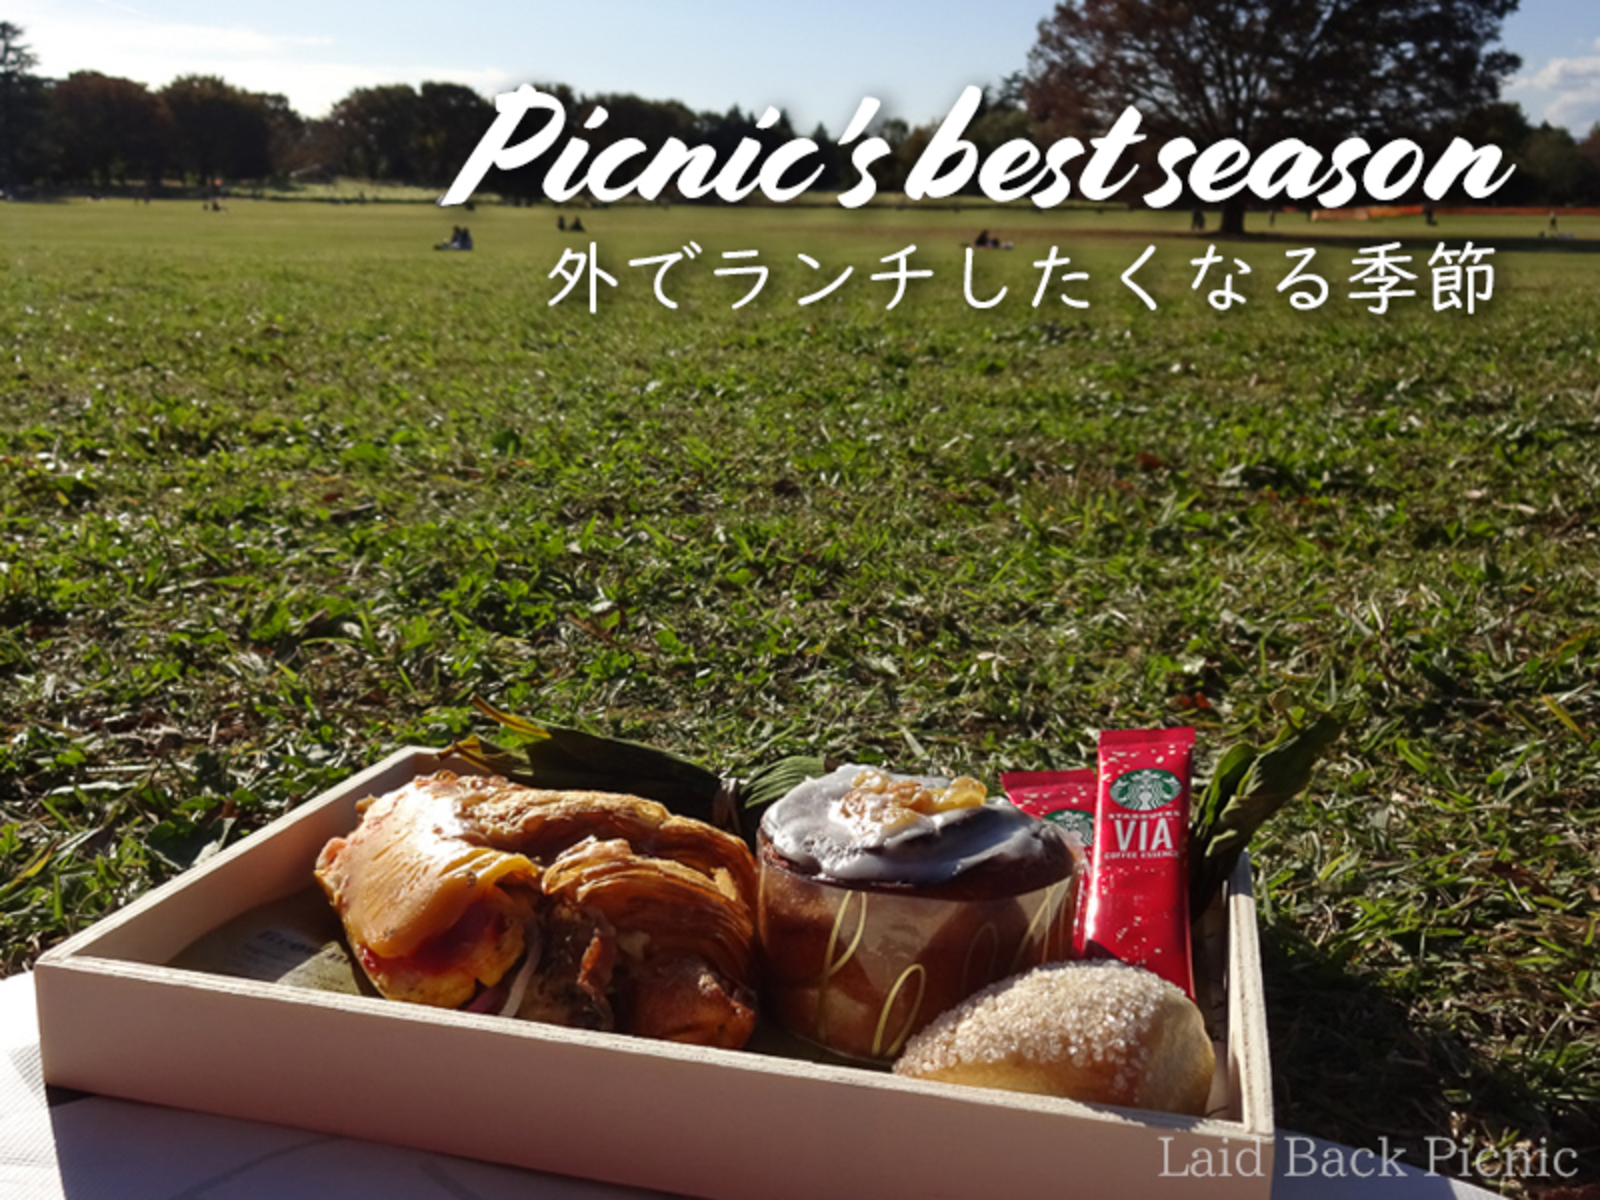 東京の西にいる人が集まる(はずの)ピクニック